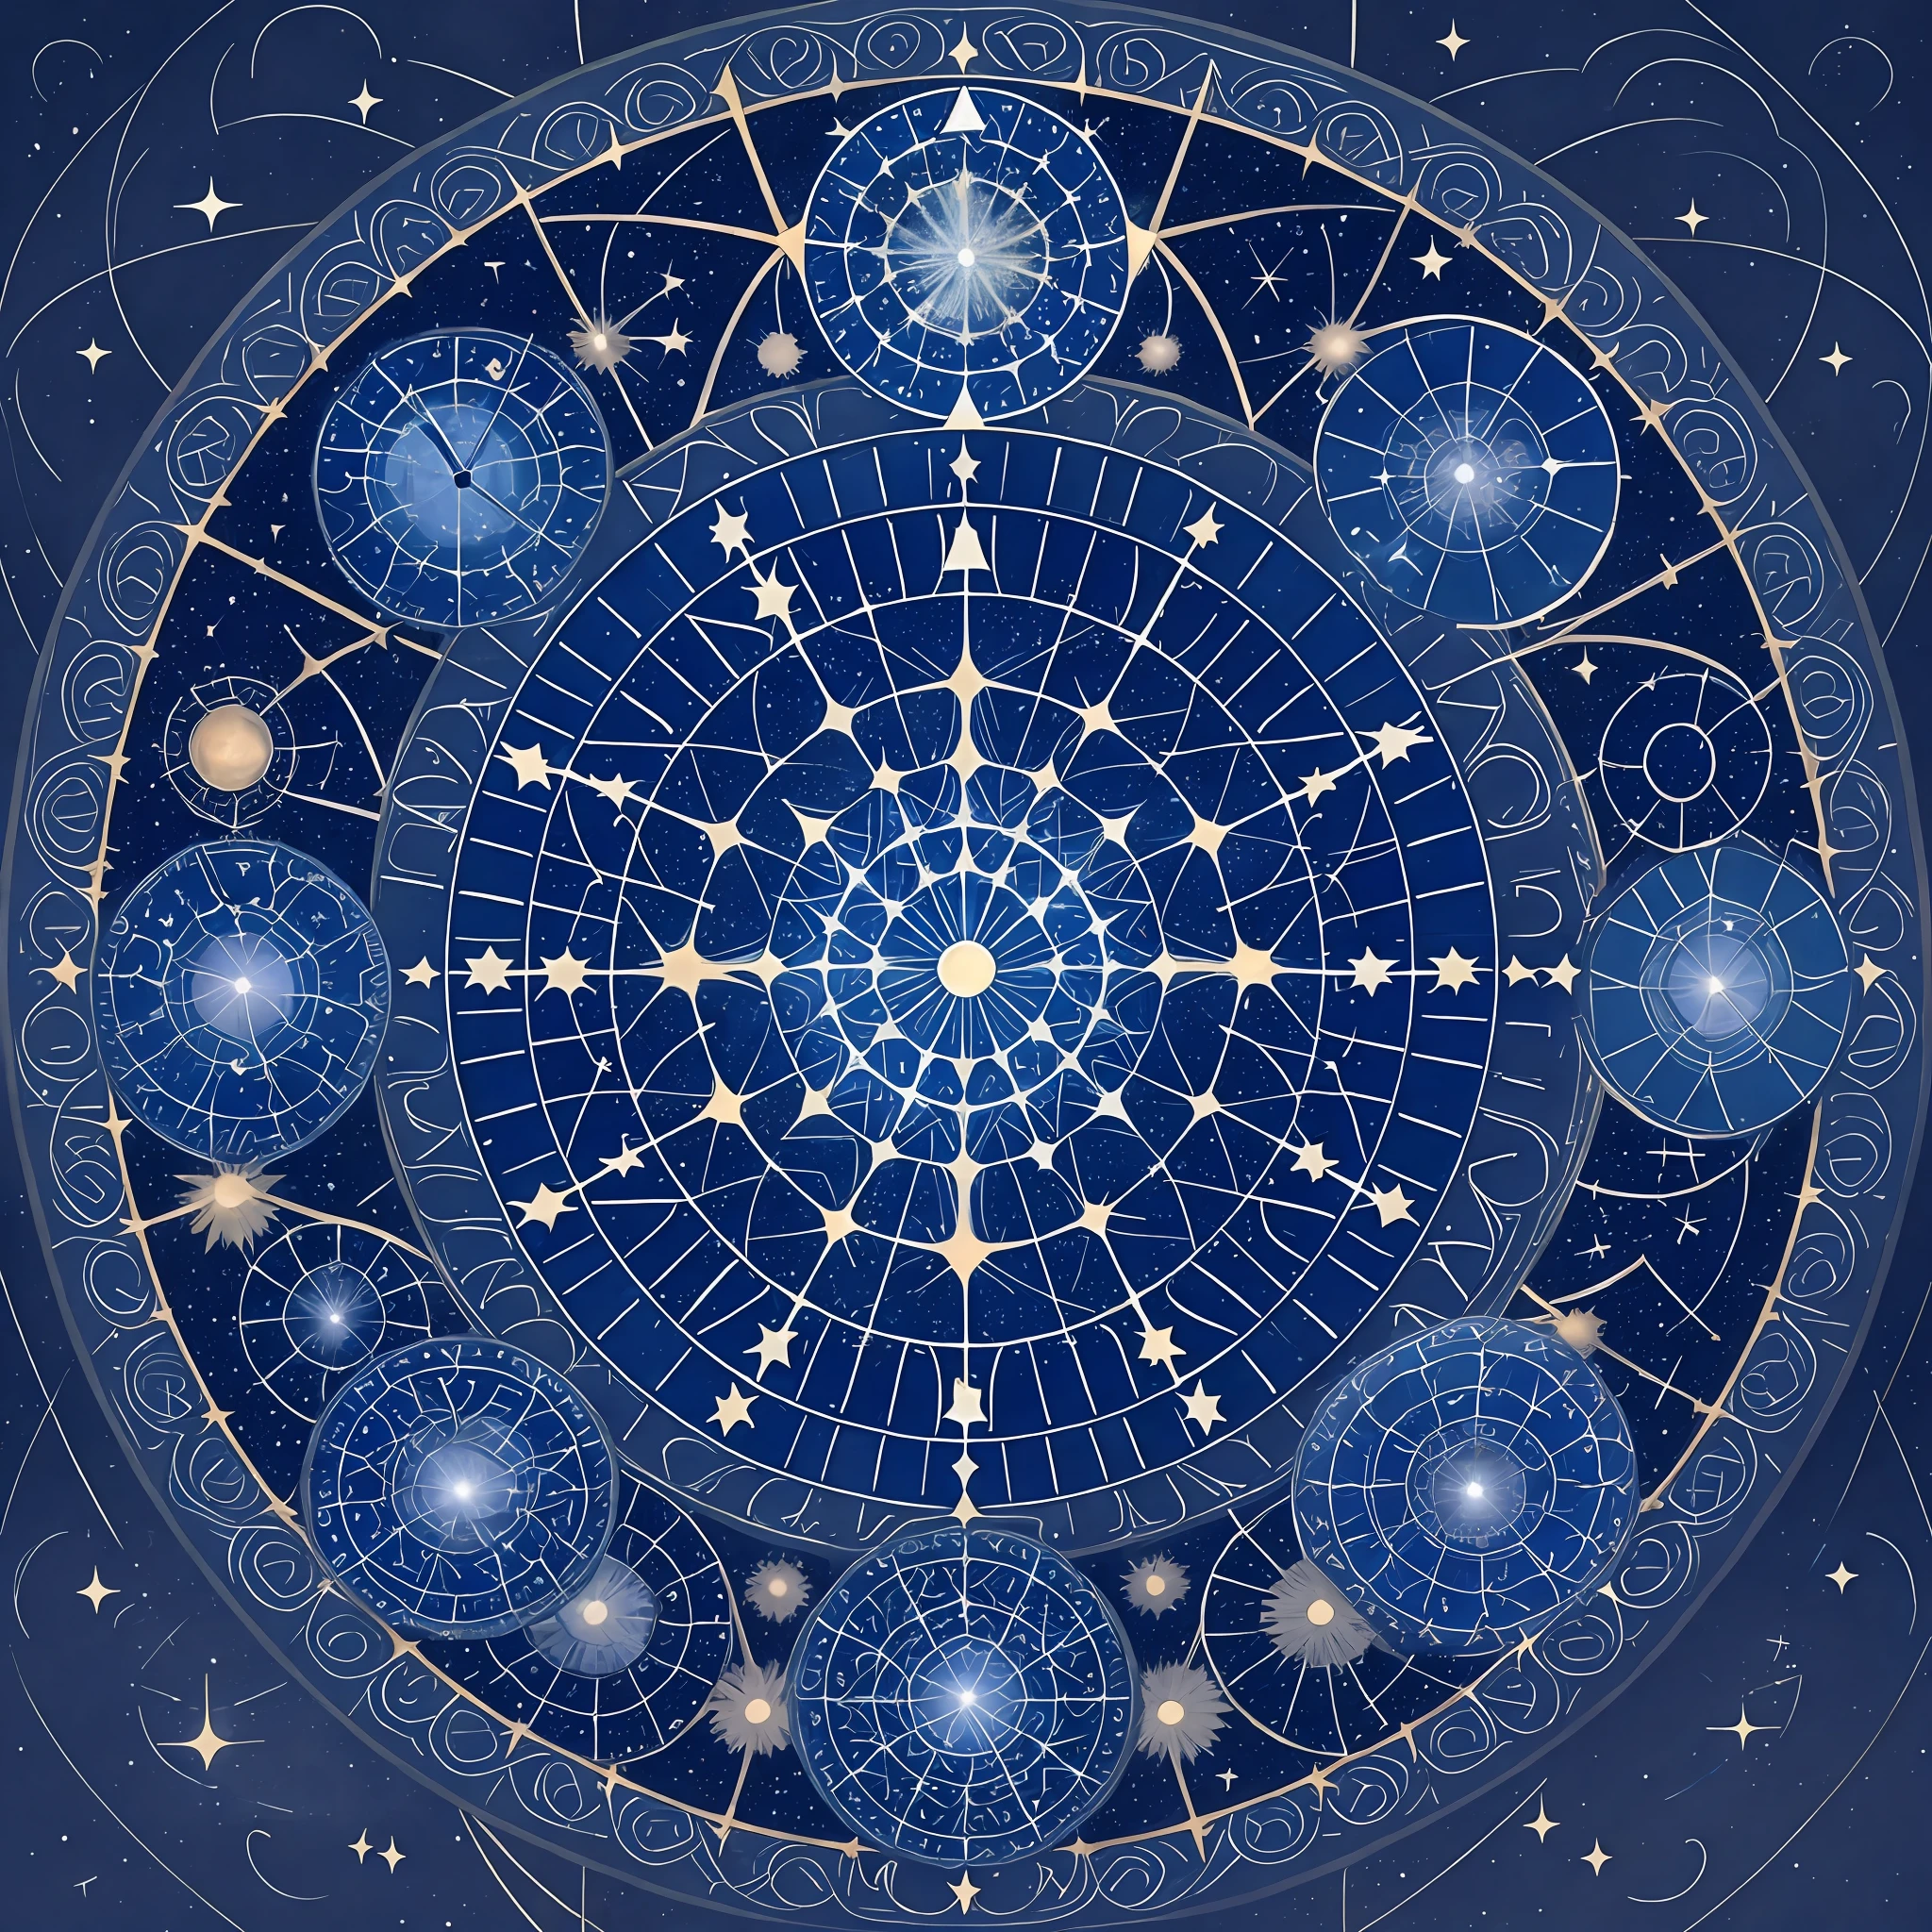 La imagen puede mostrar un cielo estrellado con un reloj astral., donde las estrellas o constelaciones forman las manecillas e indican la hora. Esta representación simbólica enfatiza la conexión entre el tiempo y el cosmos., destacando la naturaleza expansiva e infinita del universo. --auto --s2